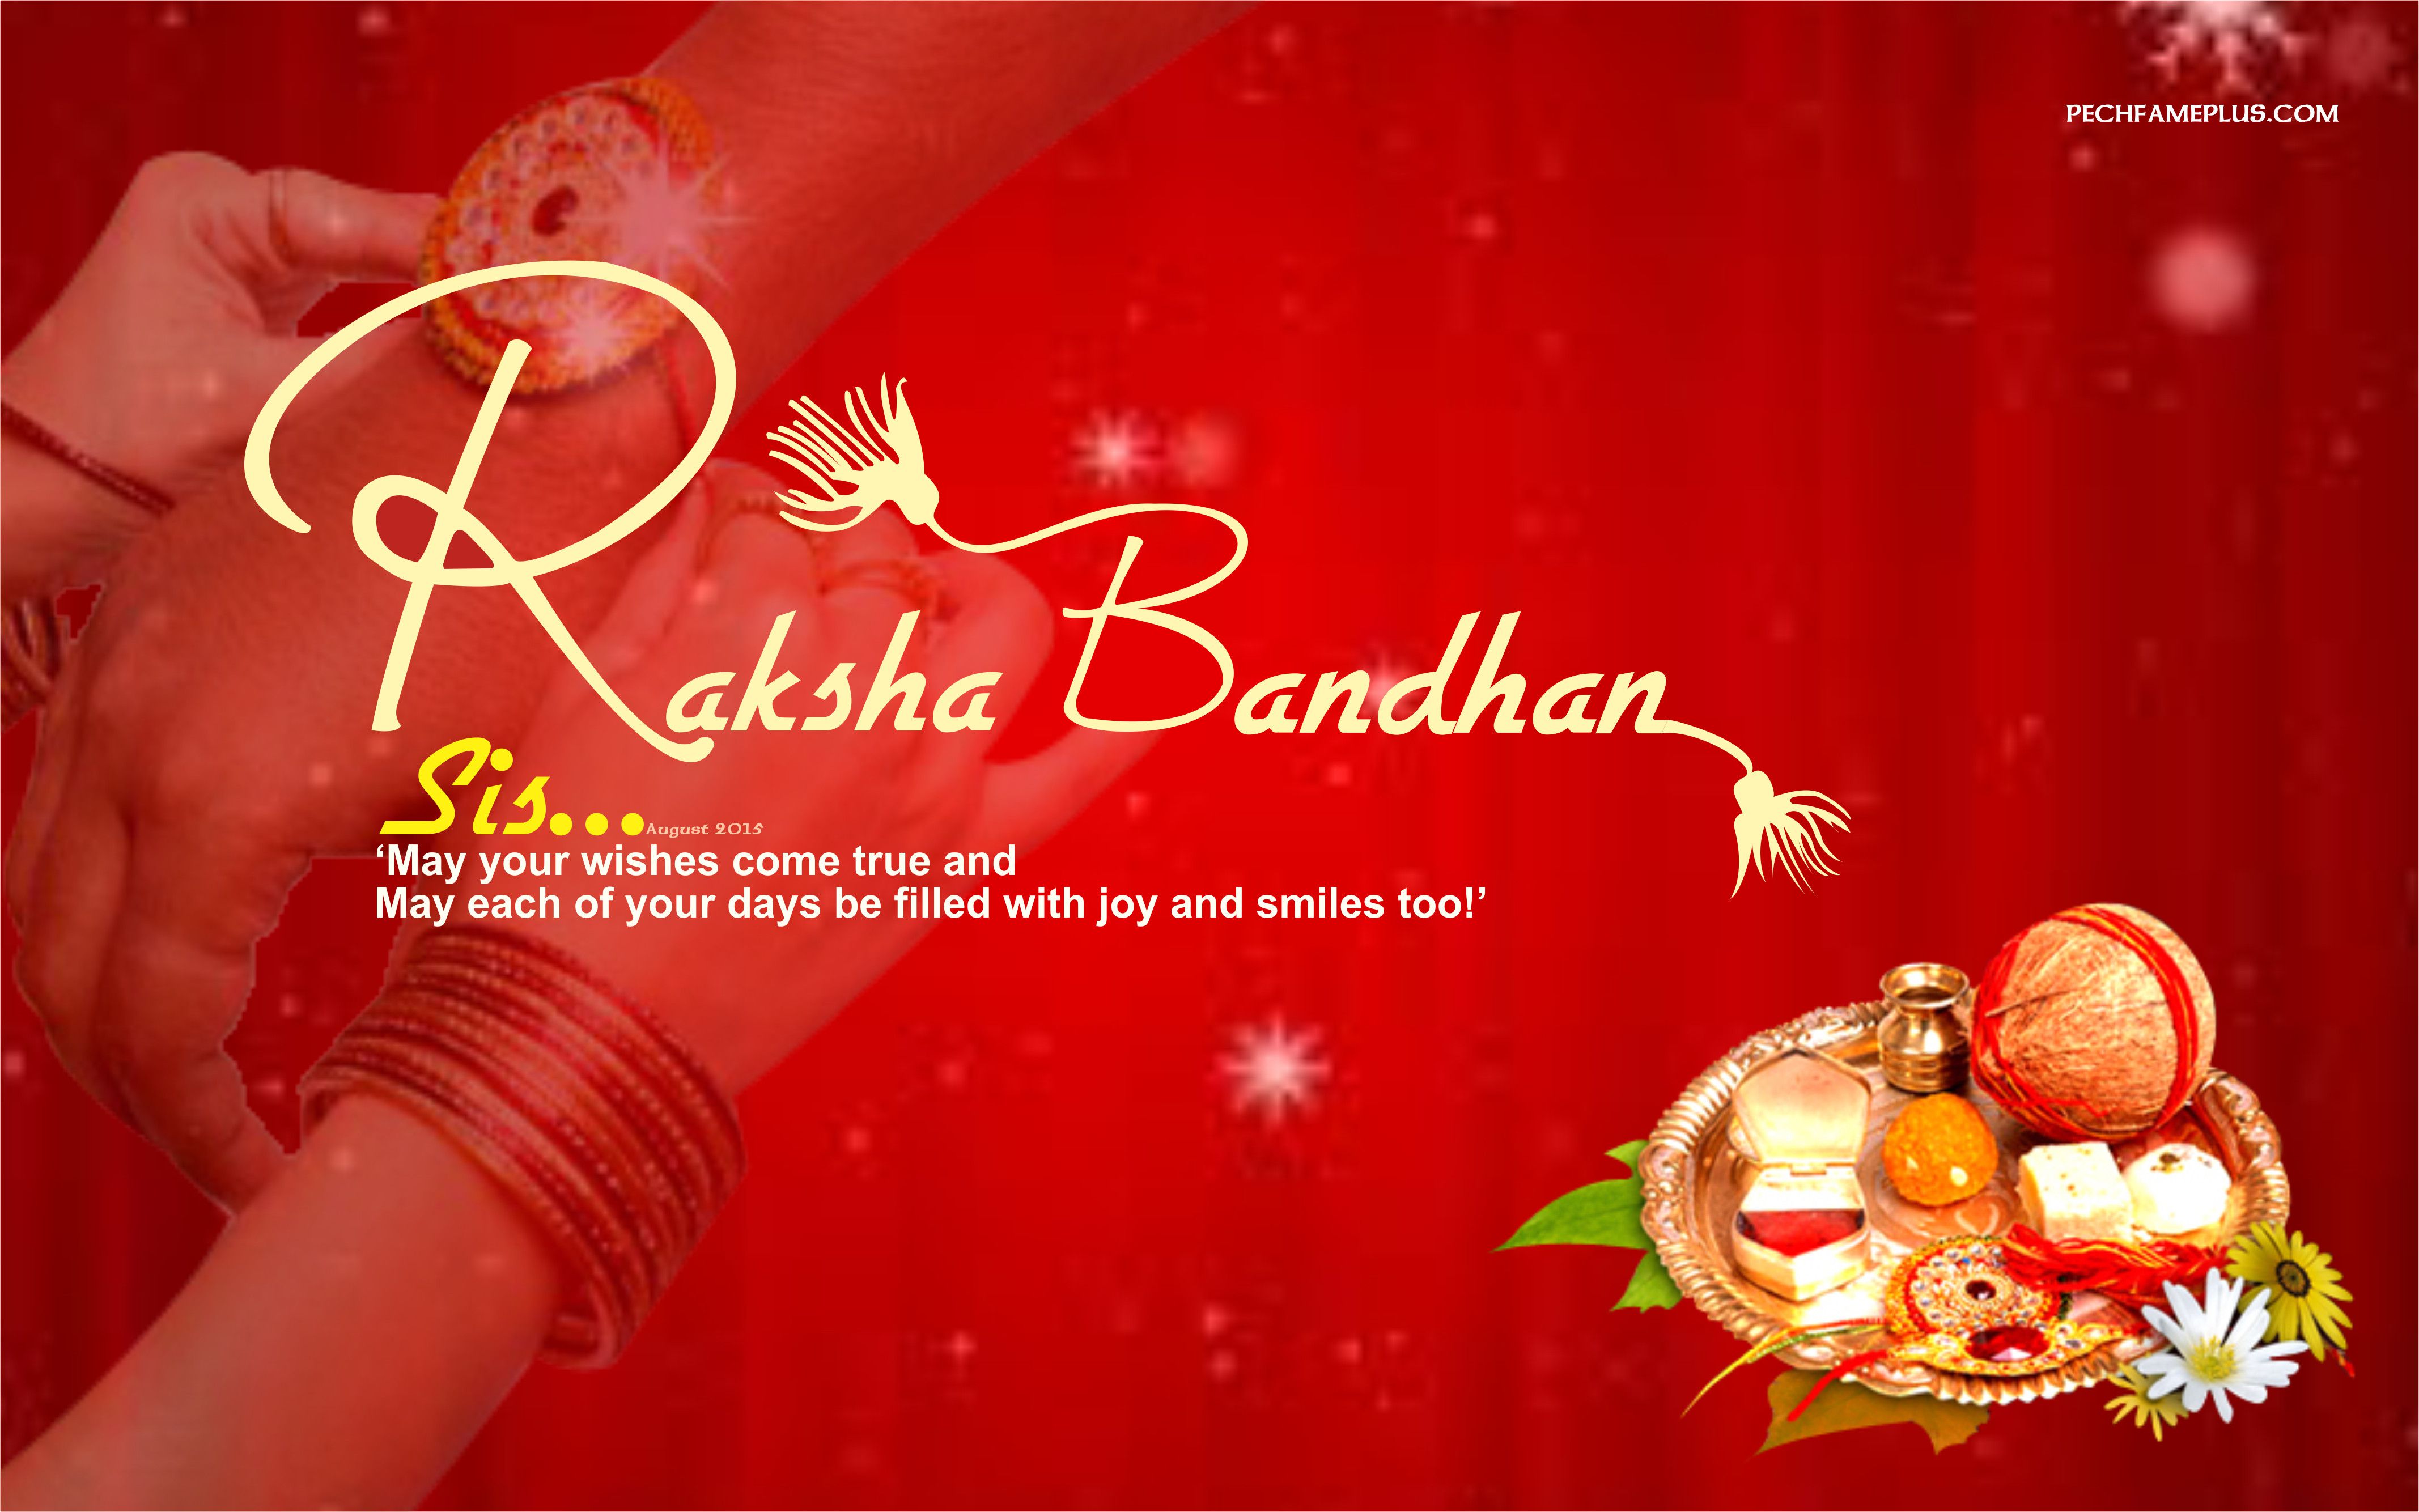 Happy Raksha Bandhan - Happy Raksha Bandhan Images Hd - 4268x2668 Wallpaper  